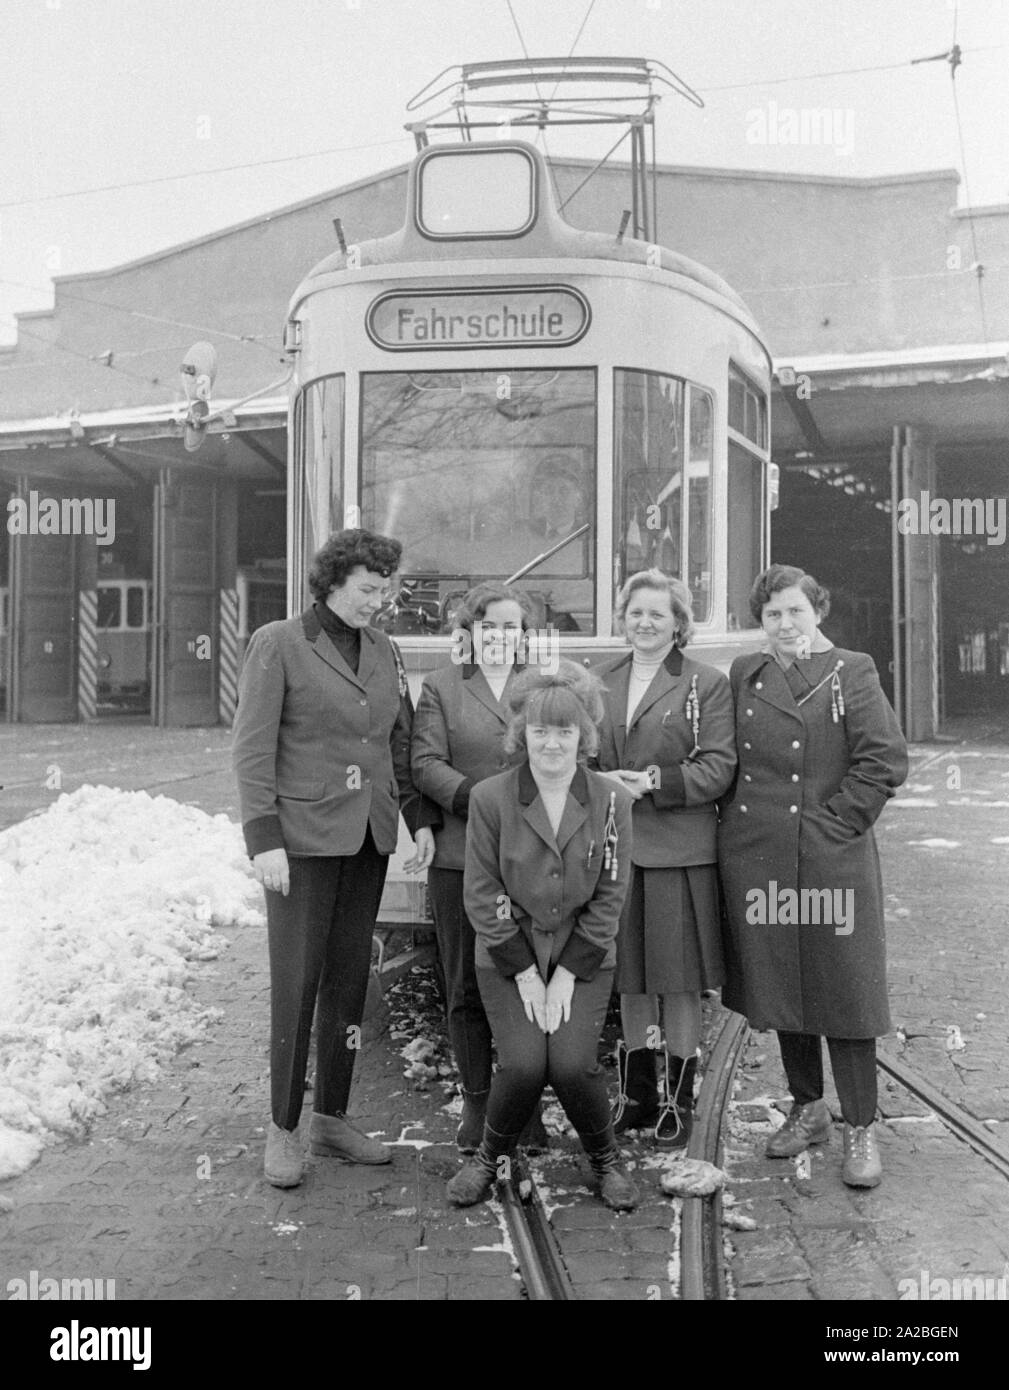 Anfang der 60er Jahre, Frauen erhielten Straßenbahn fahren Bildung zum ersten Mal in München, unter dem Ständigen öffentlichen Debatte. Dies könnte der erste Klasse. Stockfoto